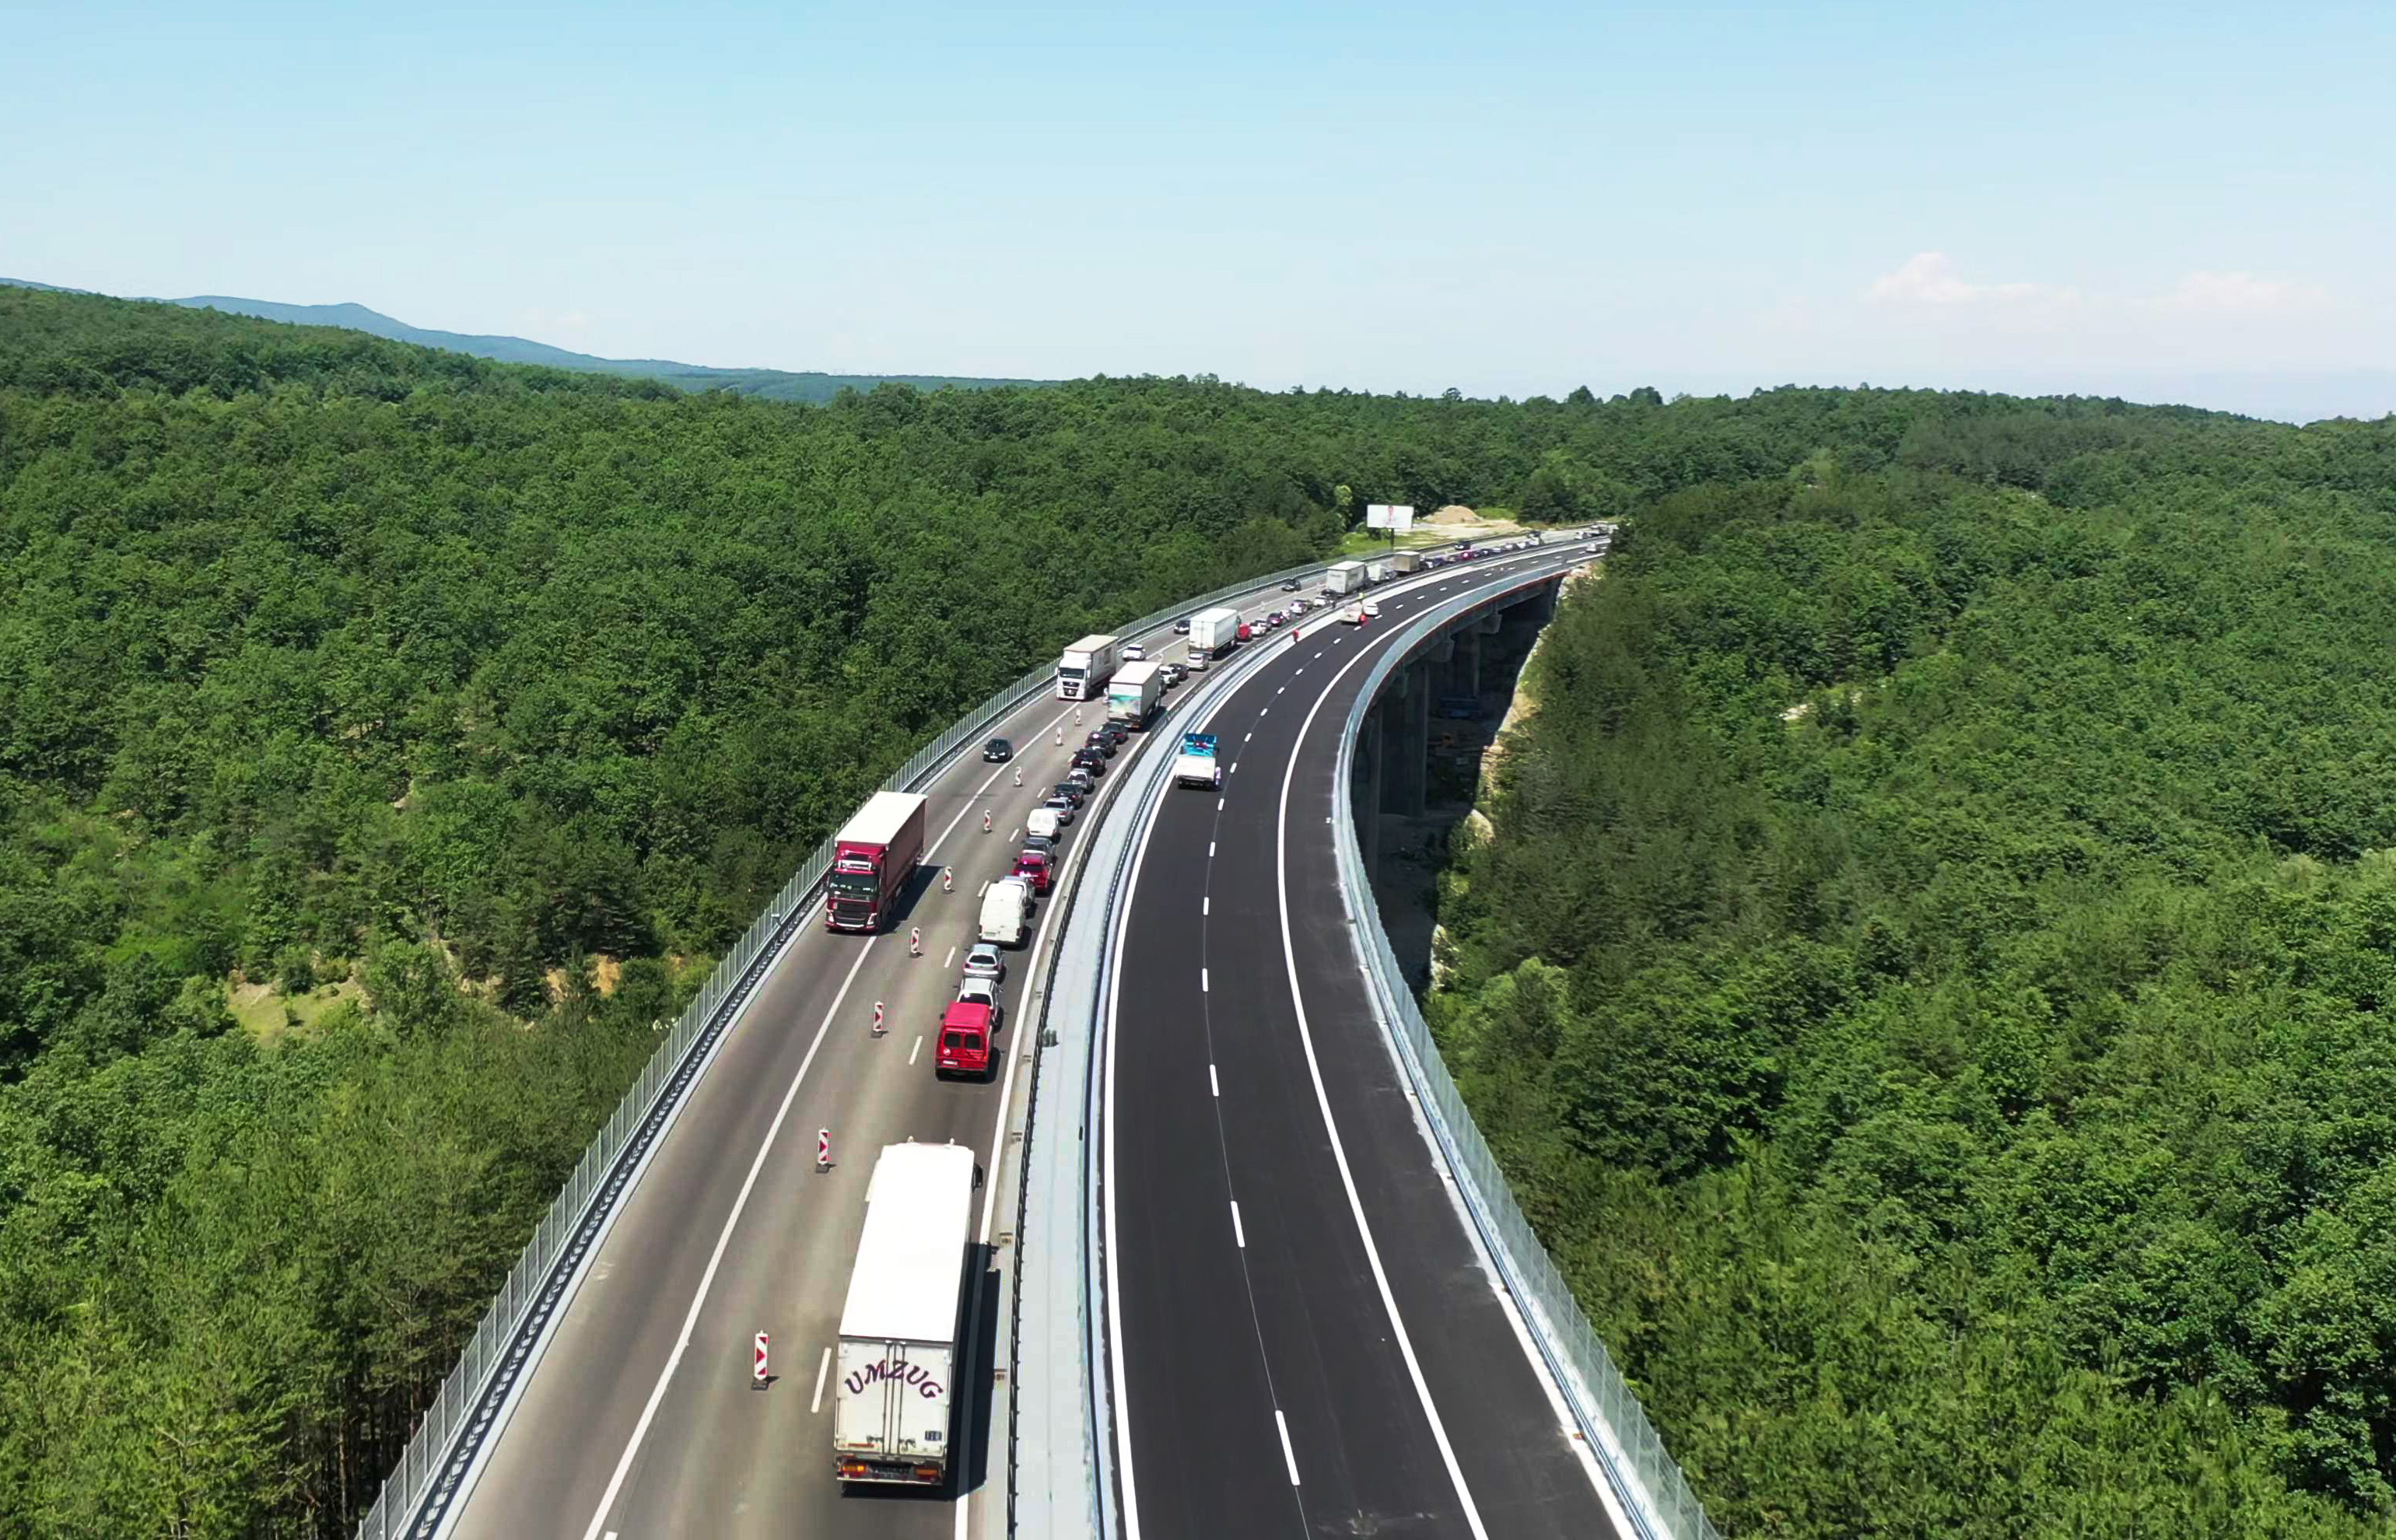 ЕК даде зелена светлина за 1.6 млрд. евро по програма "Транспорт" 2021 - 2027 г.